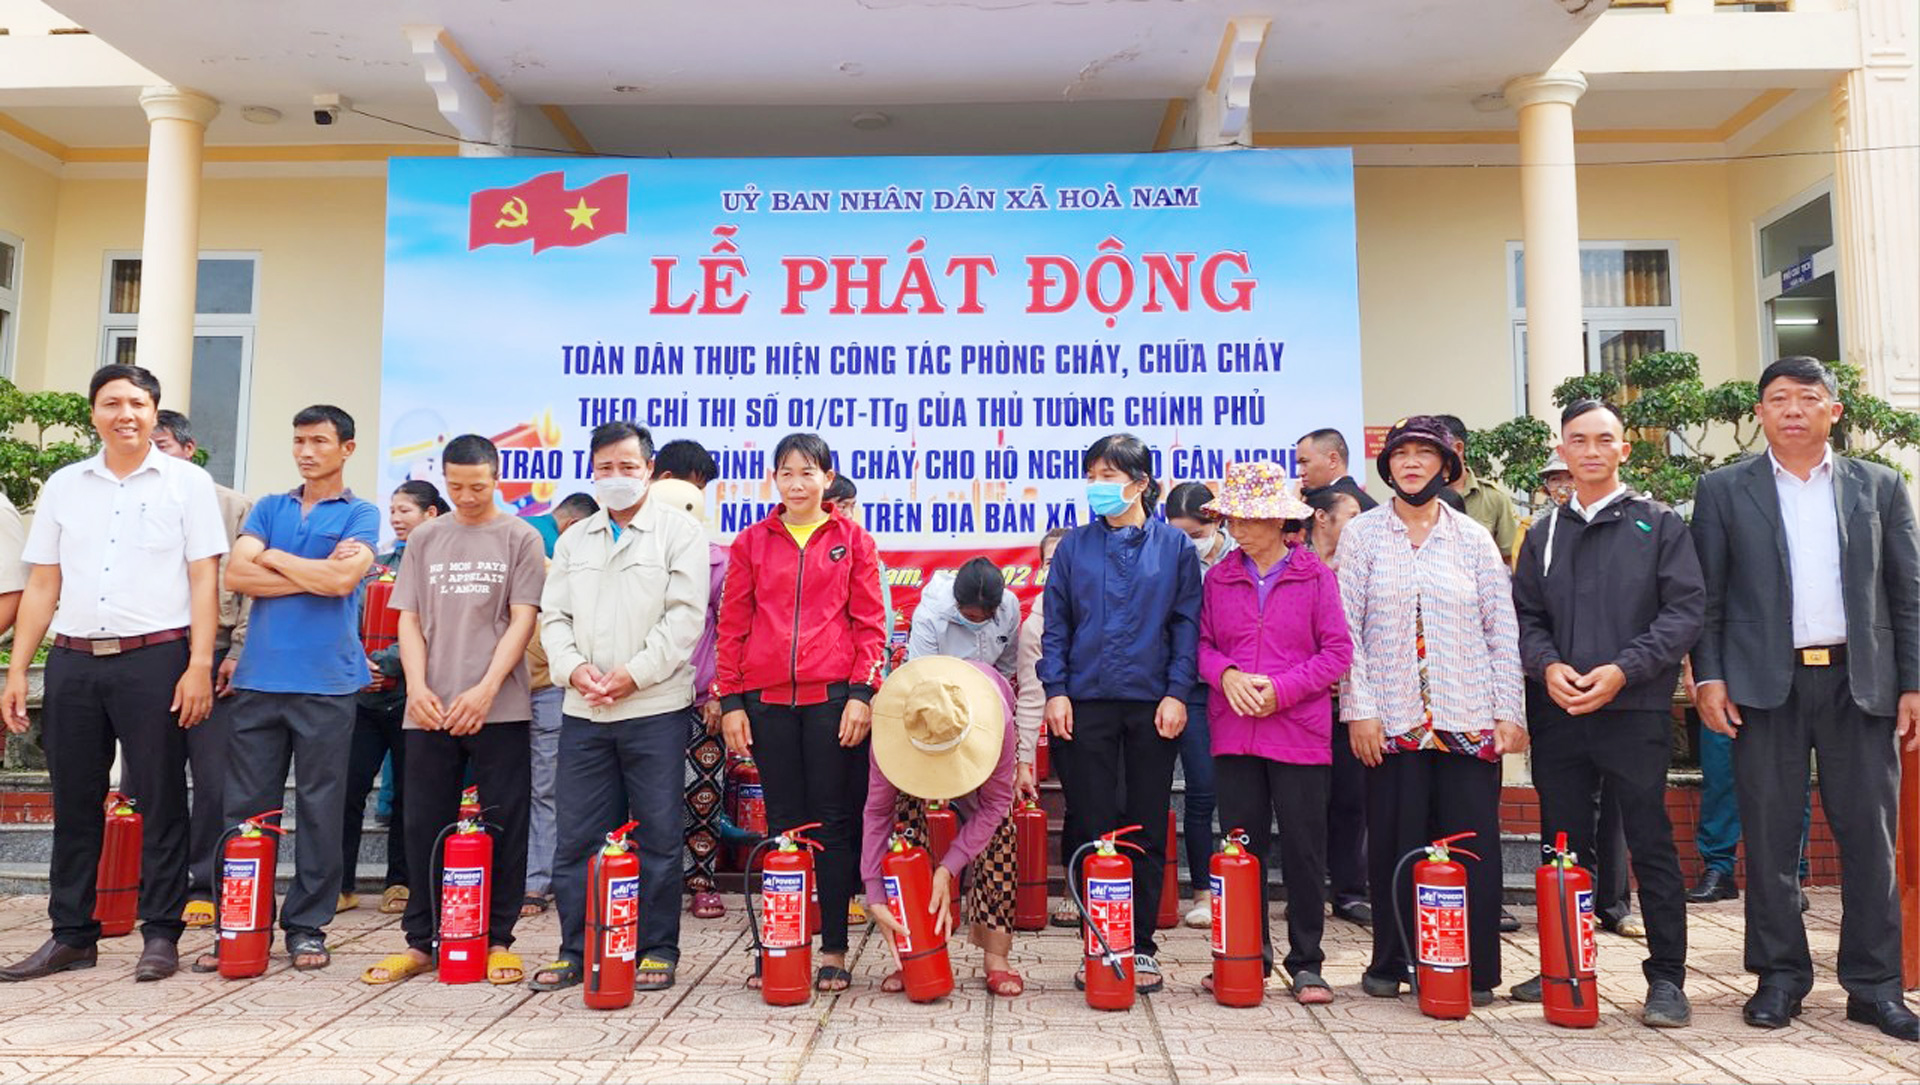 Di Linh: Tặng 200 bình chữa cháy cho hộ nghèo, hộ cận nghèo